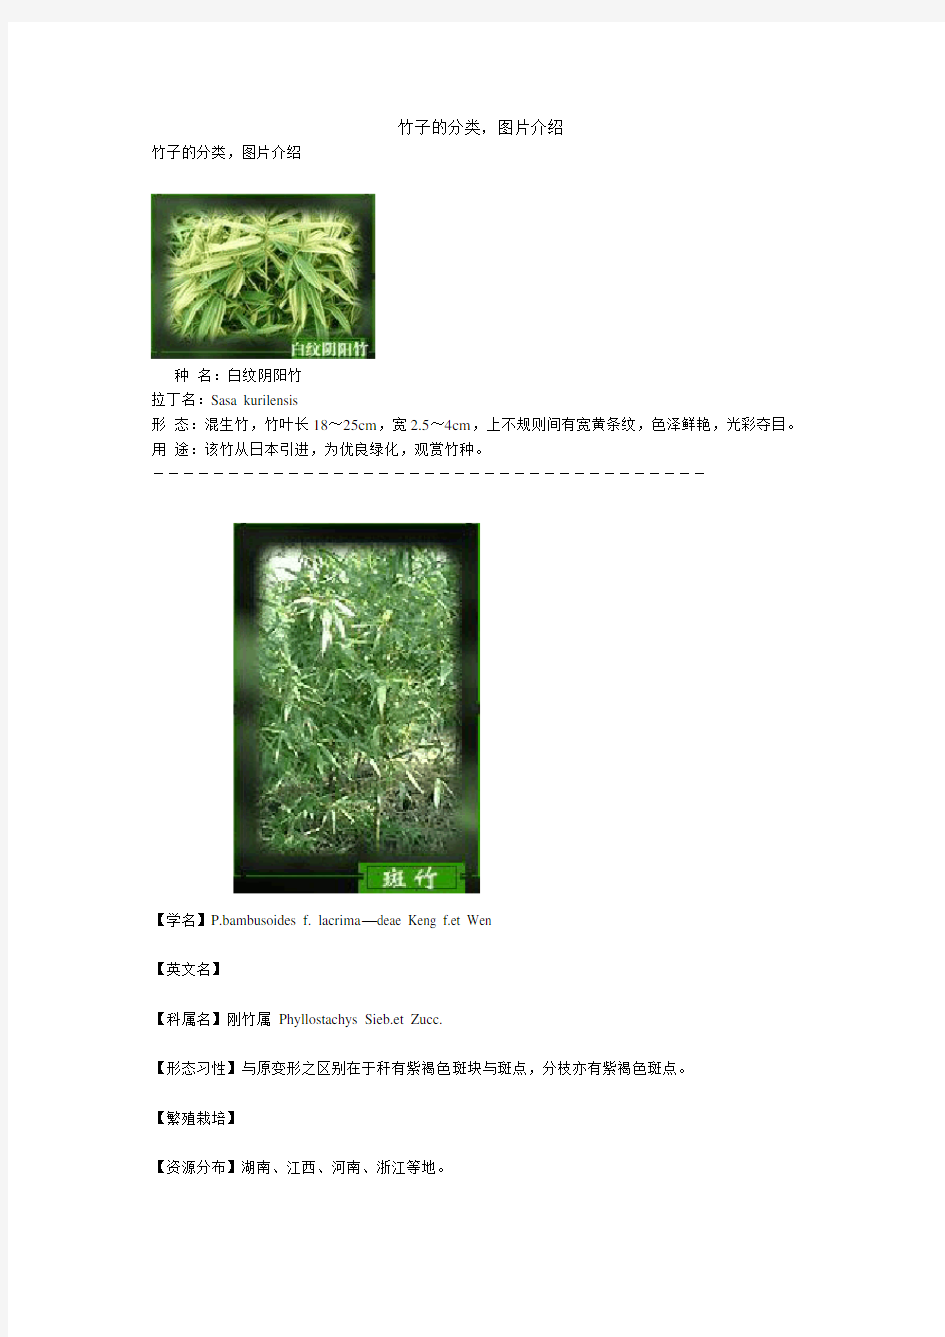 竹子的分类图片介绍